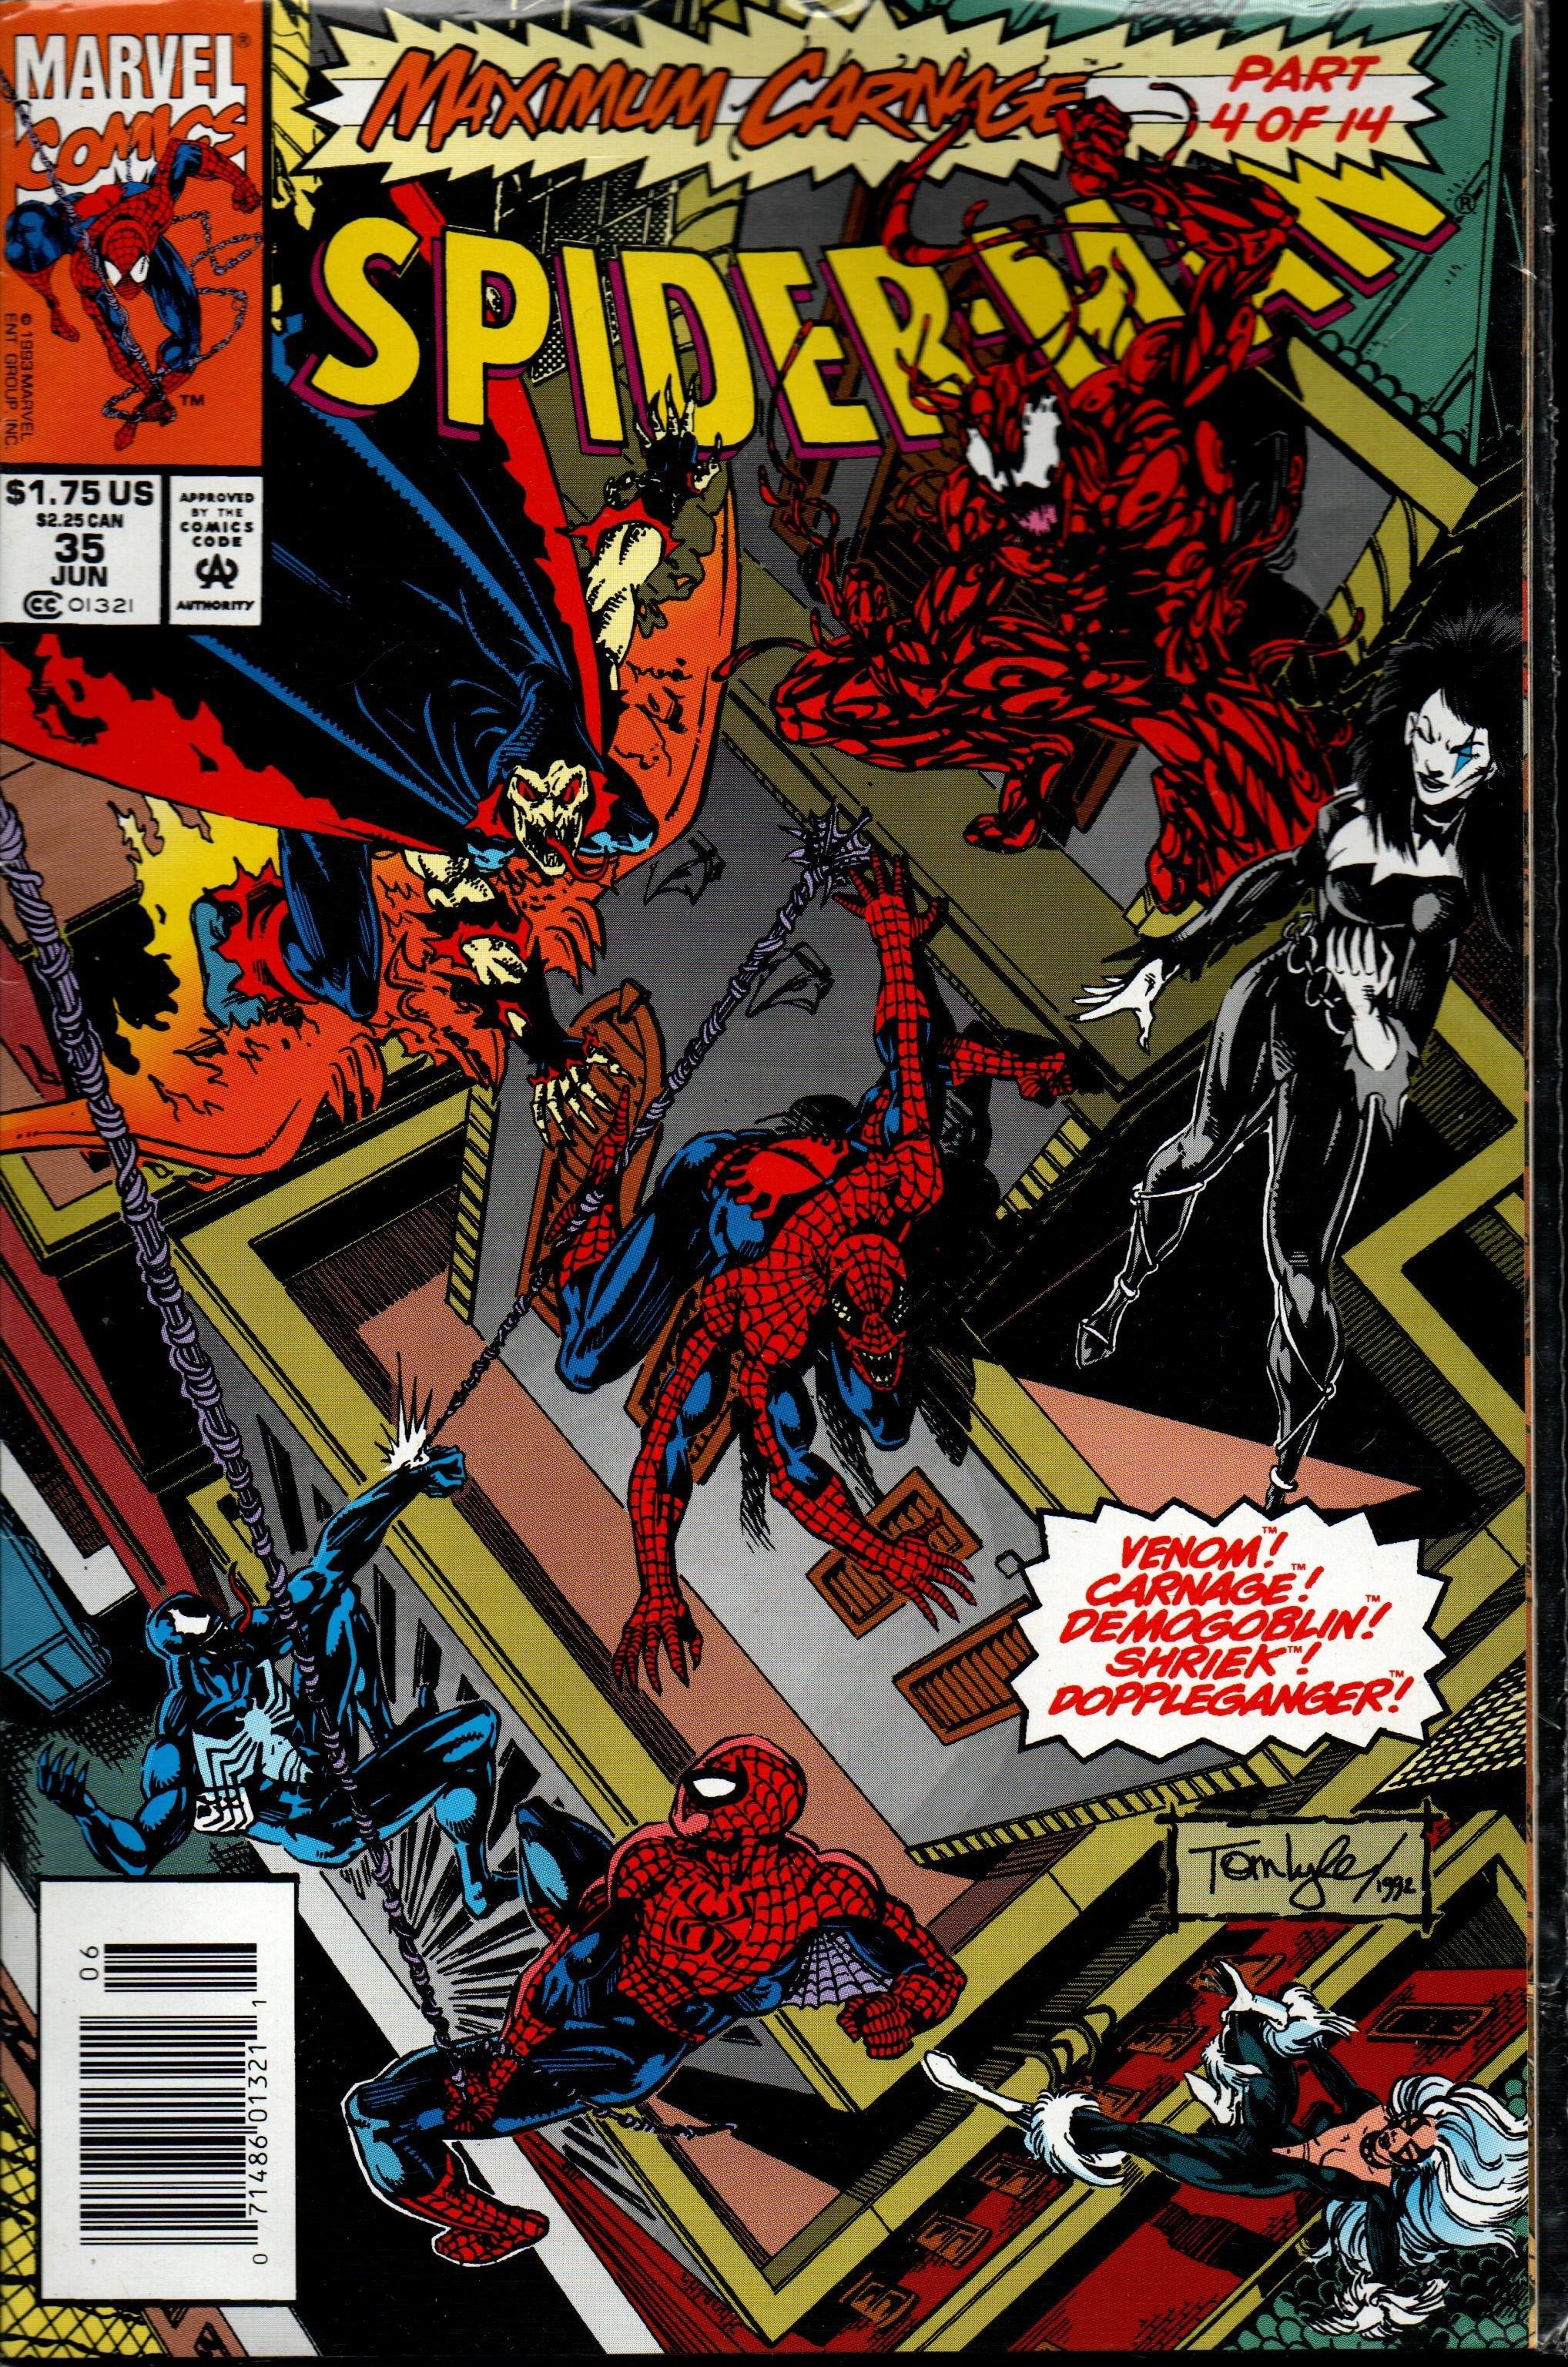 SPIDER-MAN # 35 JUN 1991 MAXIMUM CARNAGE PART 4 OF 14